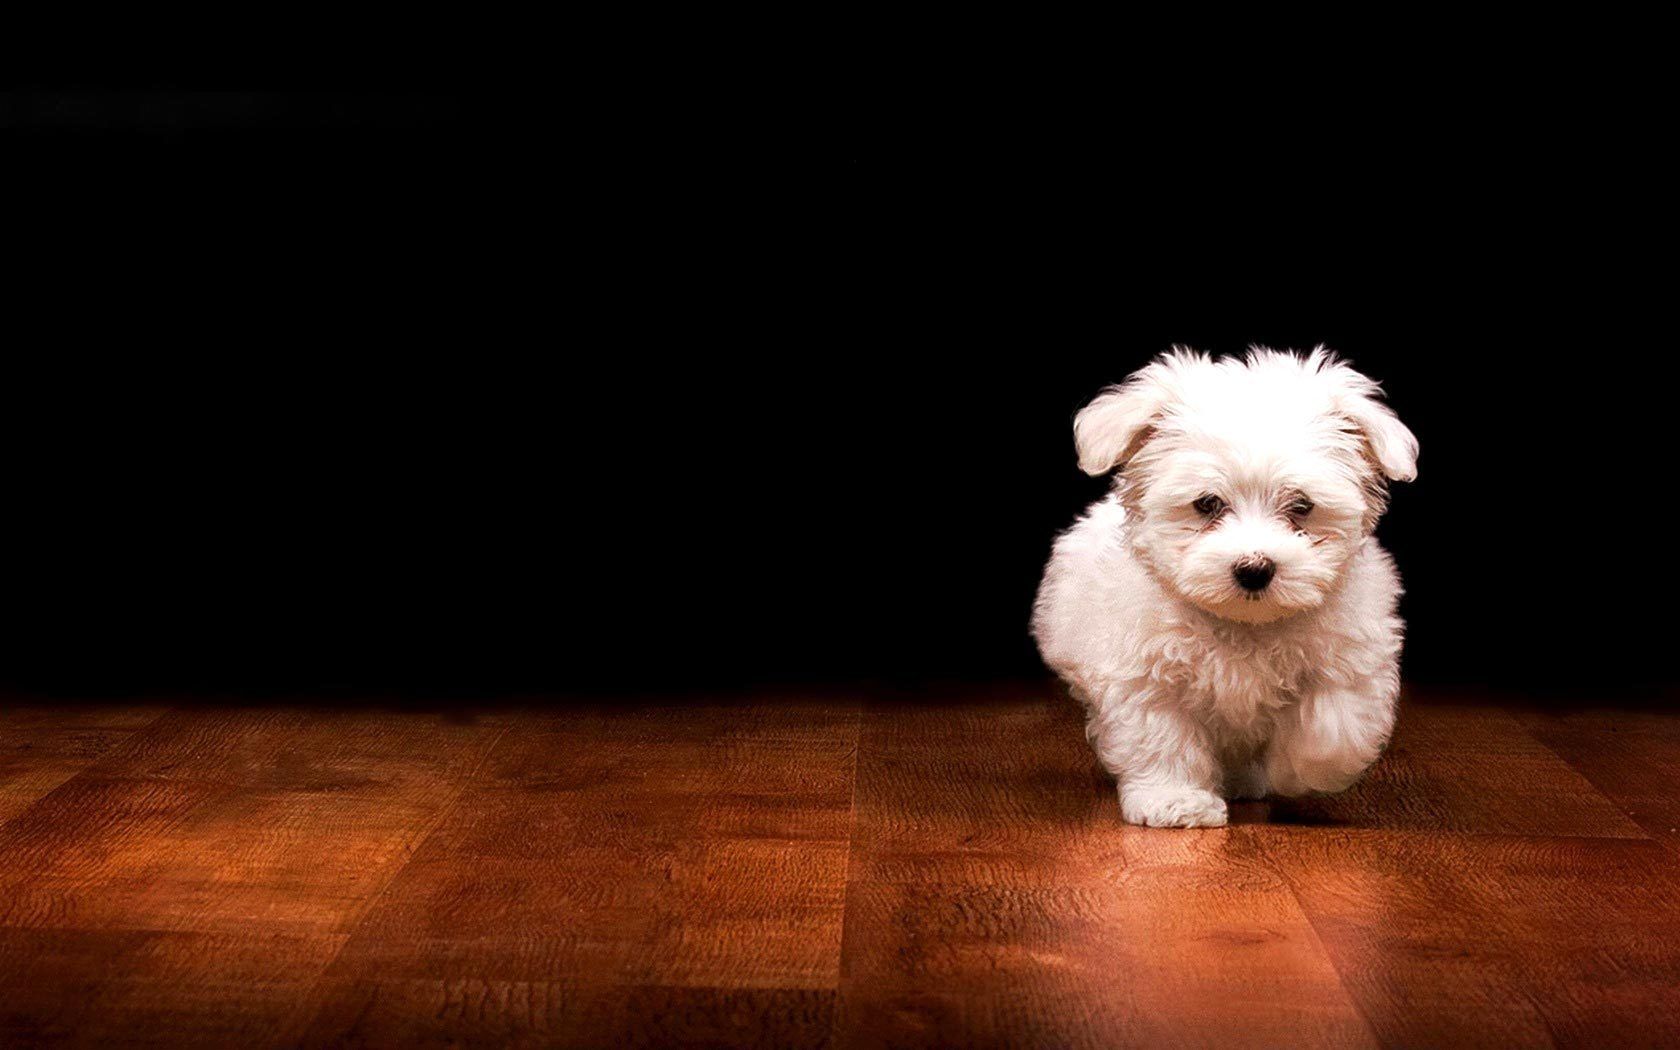 تصویر زمینه دوست داشتنی از سگ پاکوتاه عروسکی به رنگ سفید